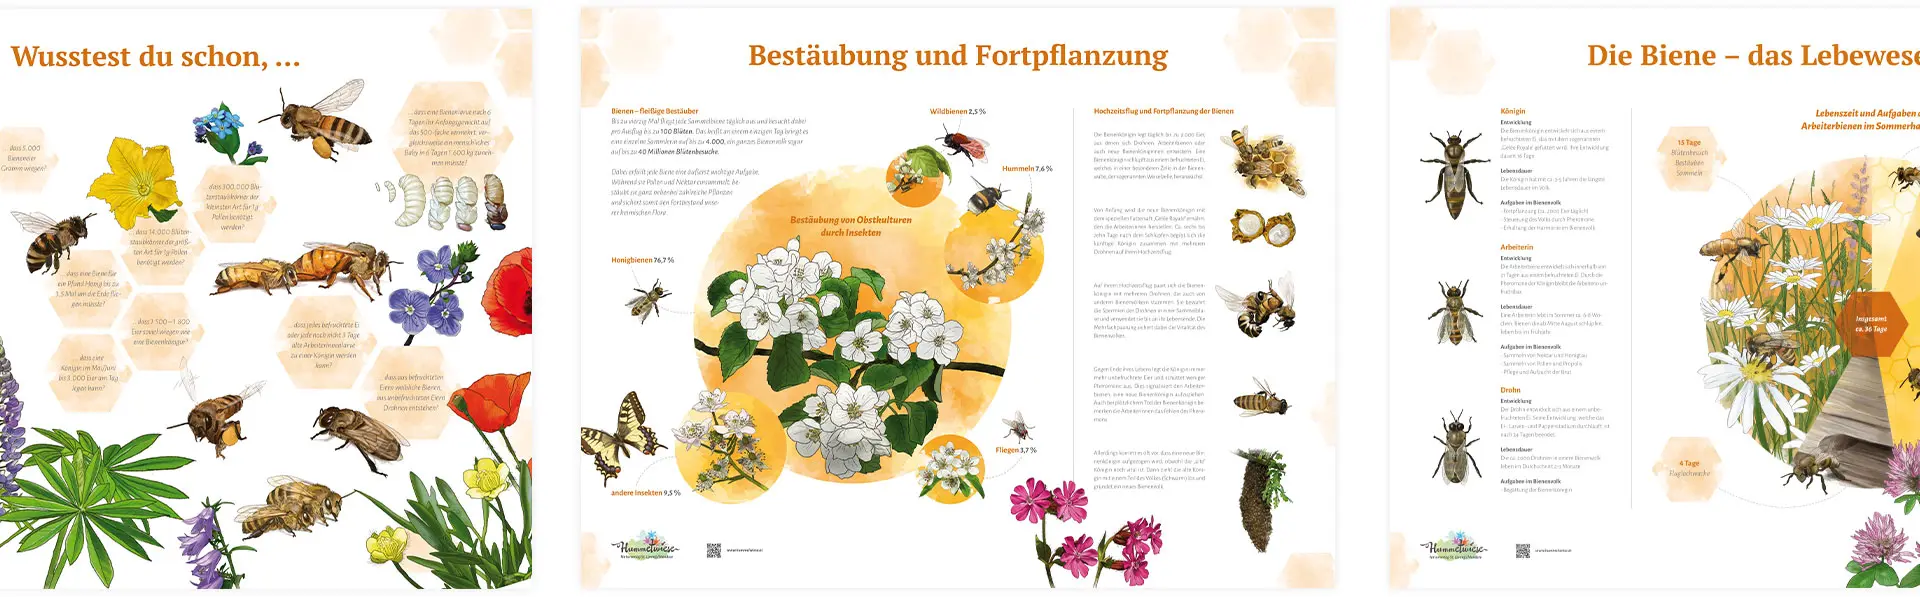 Infografiken mit verschiedenen Themenbereichen für die Hummelwiese in Österreich